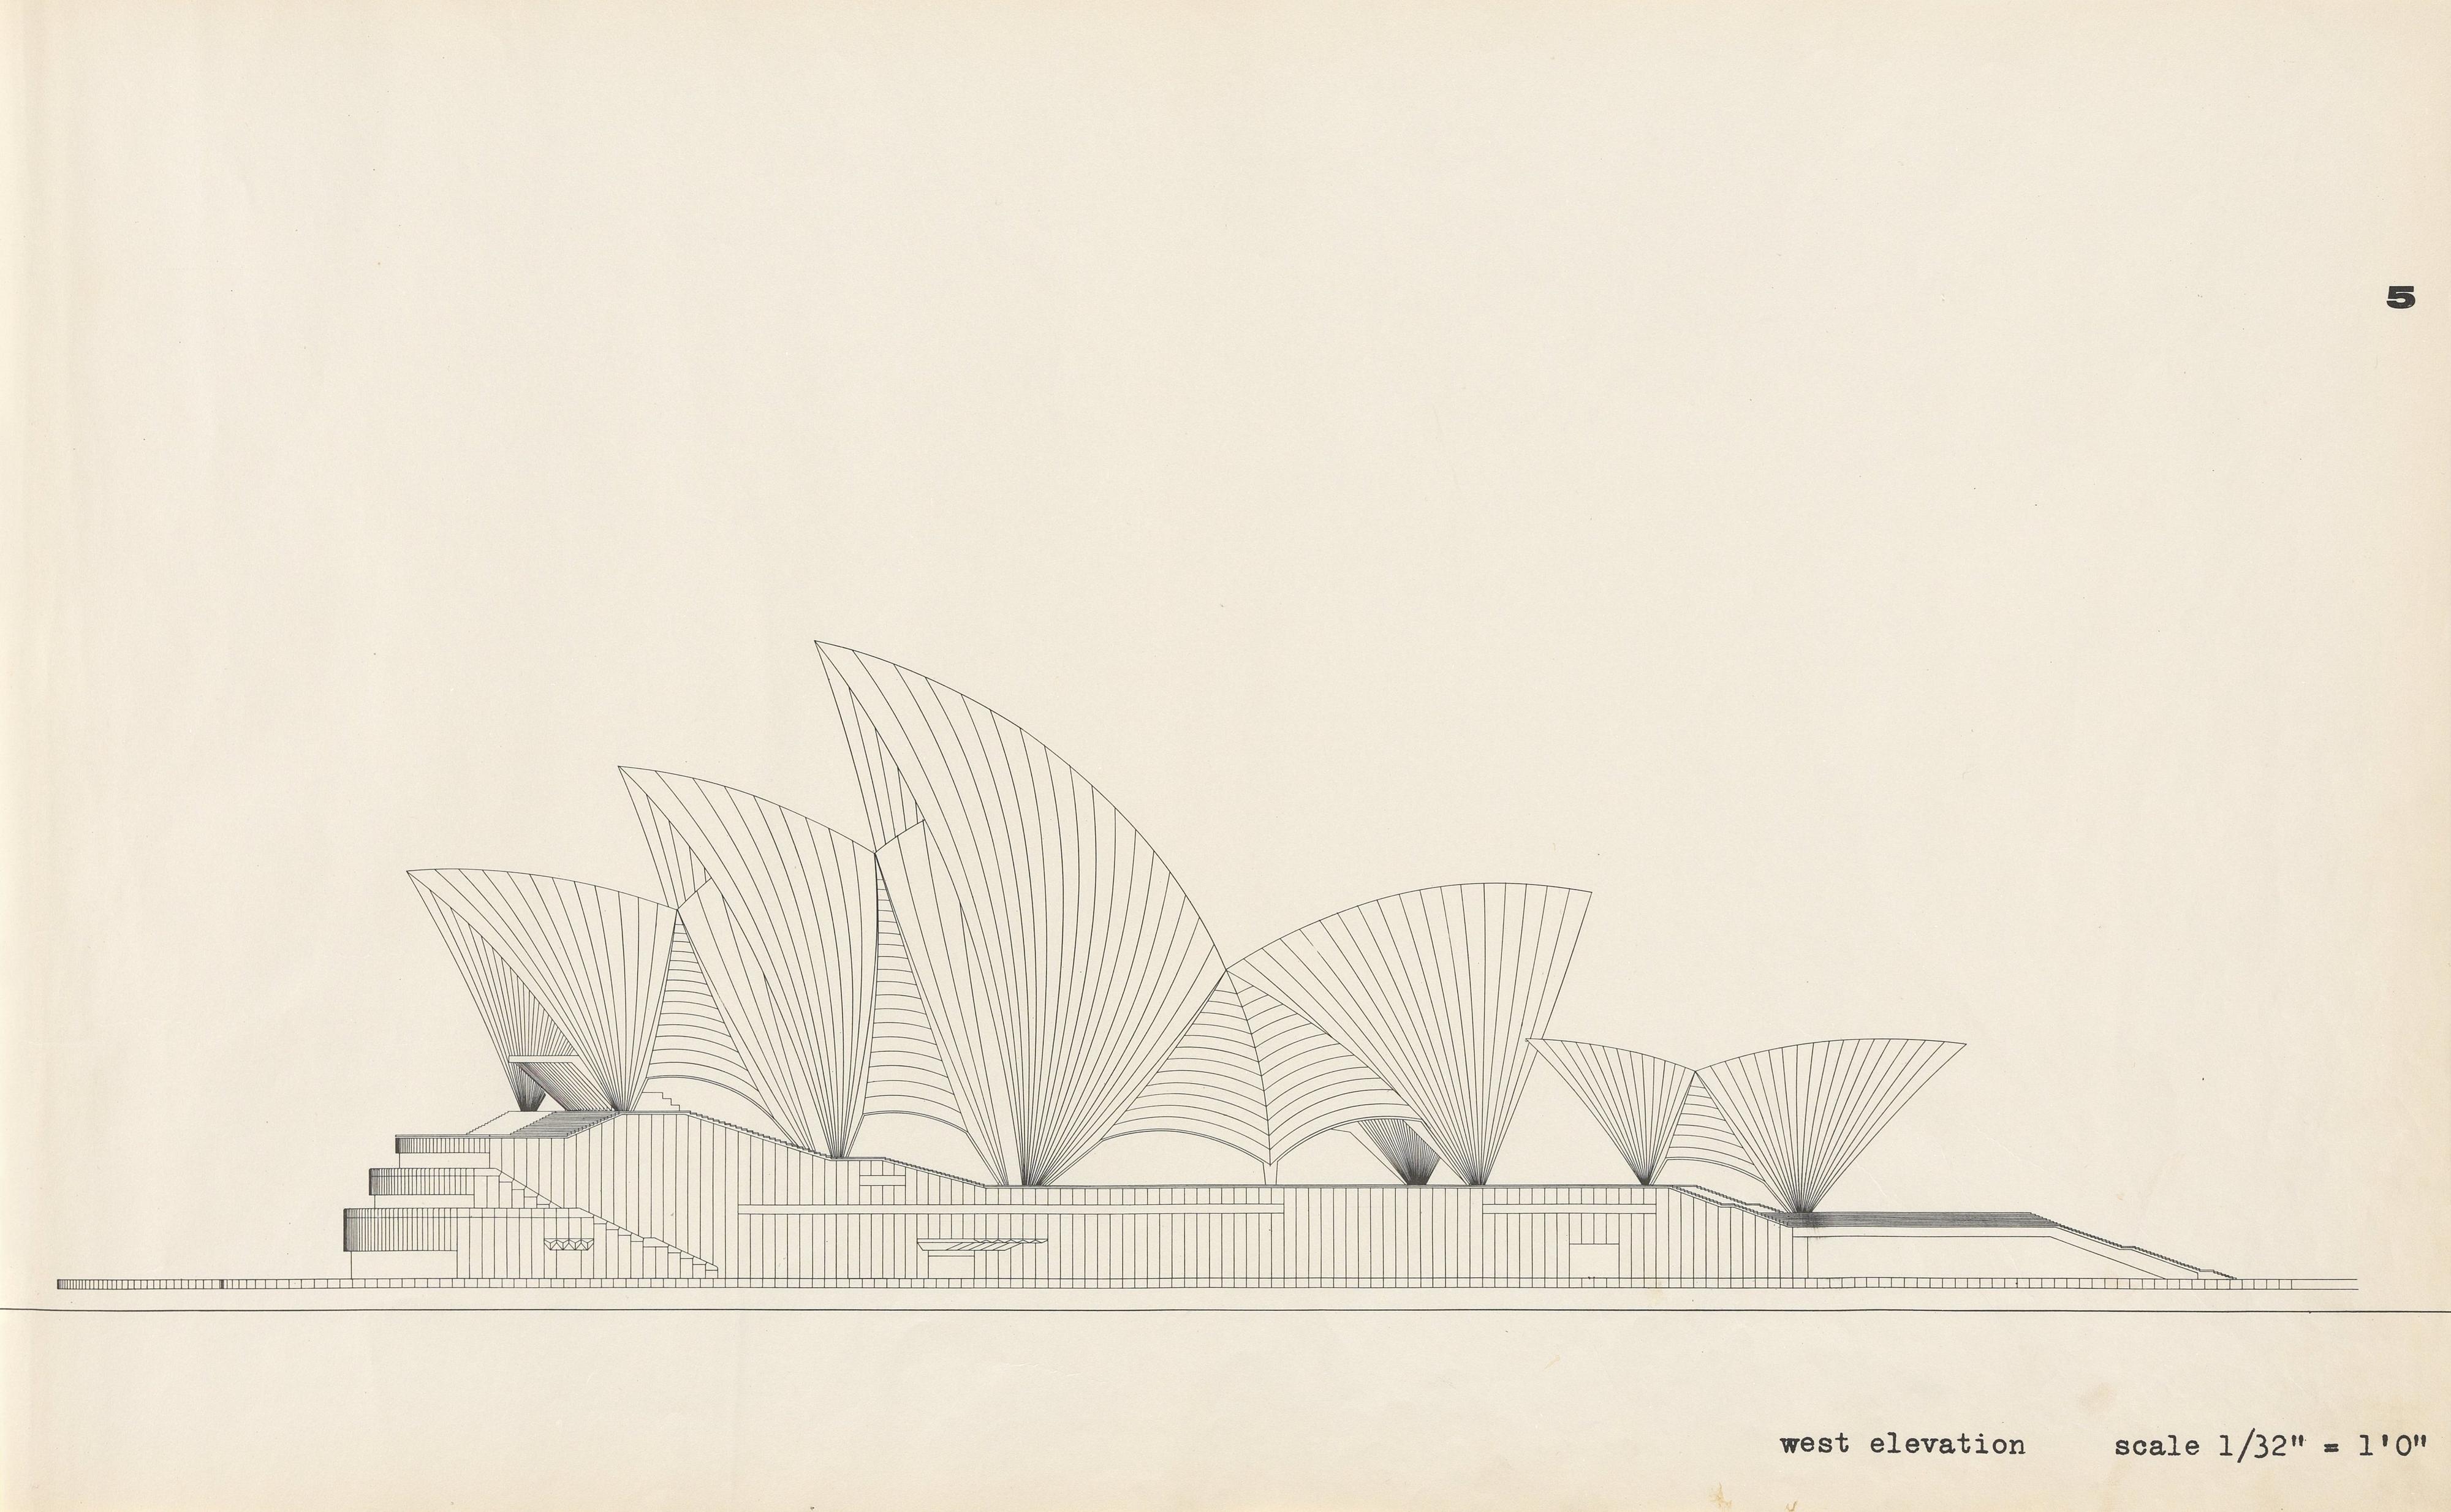 Sydney Opera House : [Yellow Book] / architect Jørn Utzon. — 1962. — 39 plans